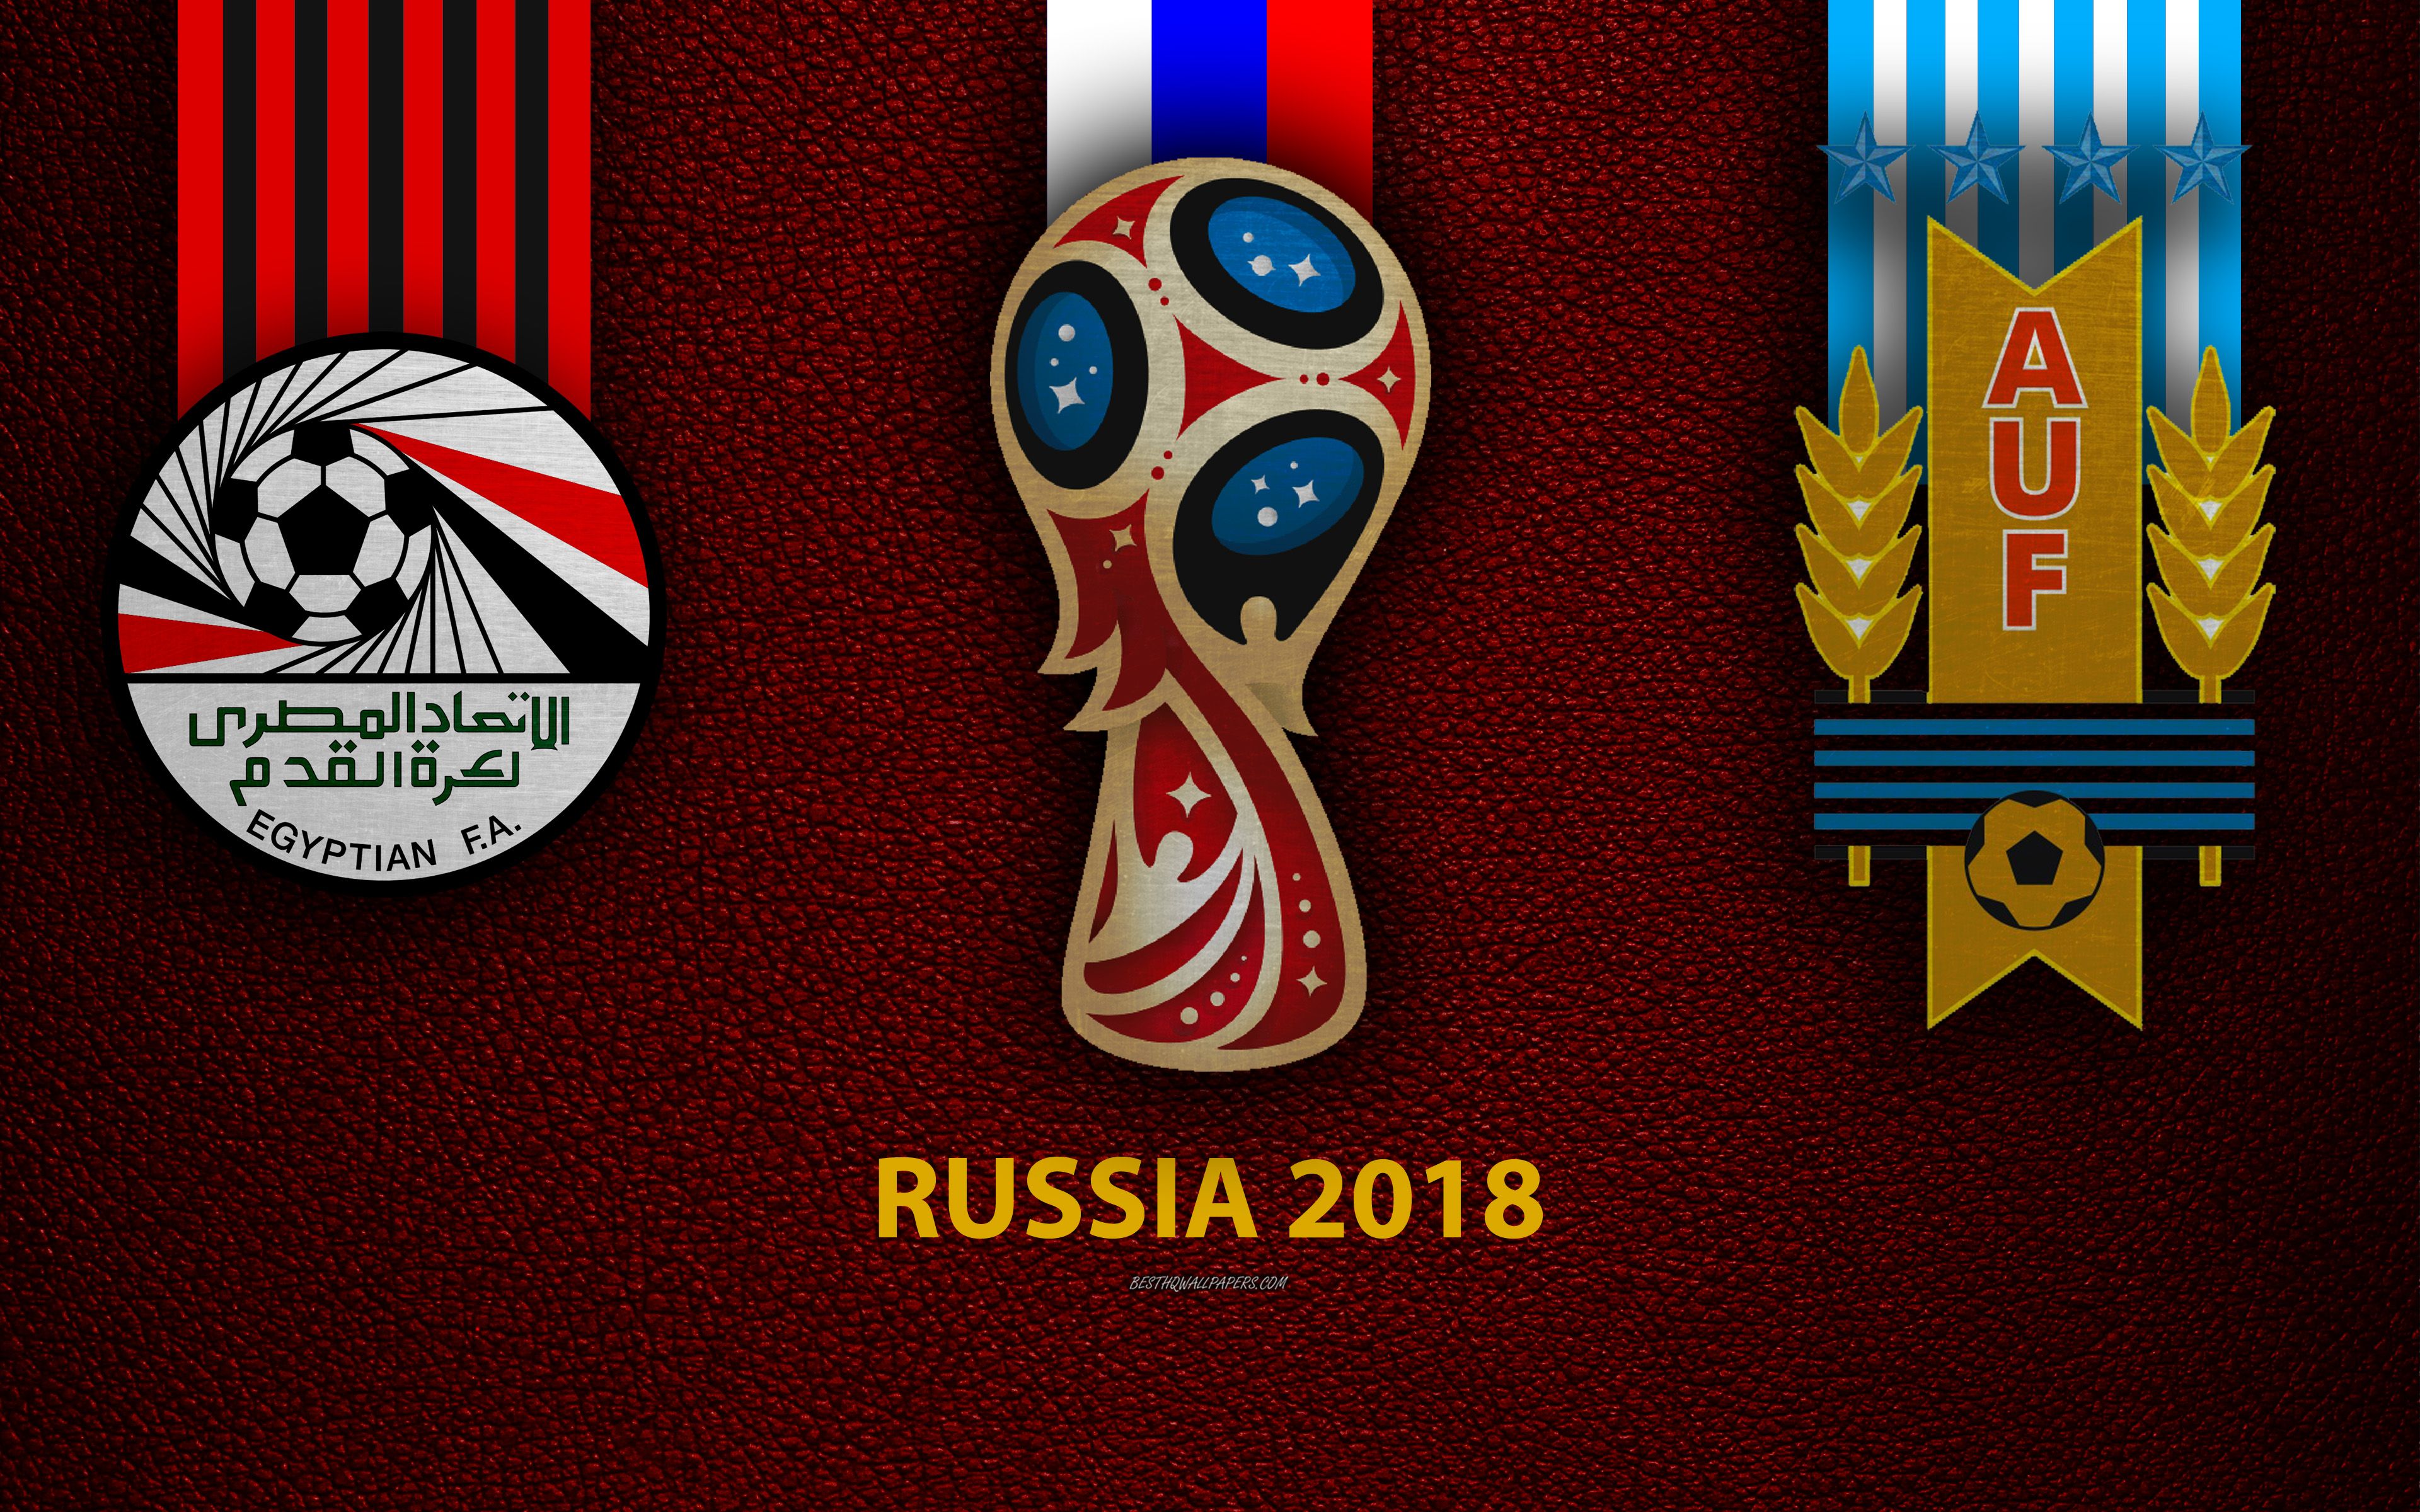 Download wallpaper Egypt vs Uruguay, 4k, football, logos, 2018 FIFA